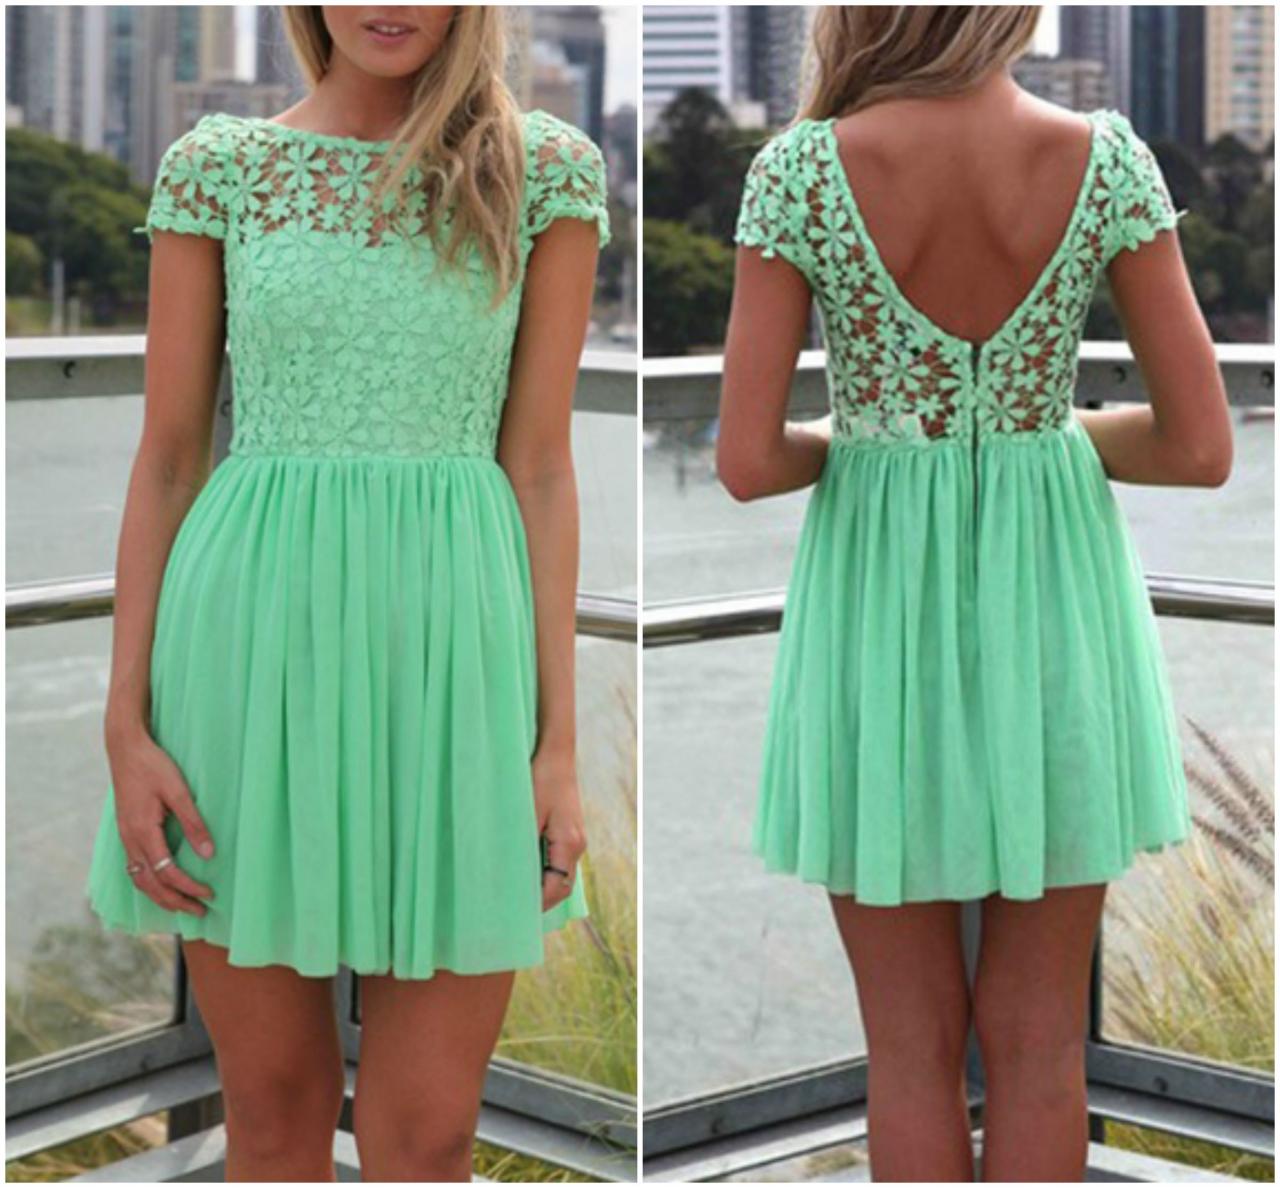 Gorgeous Green Lace And Chiffon Dress